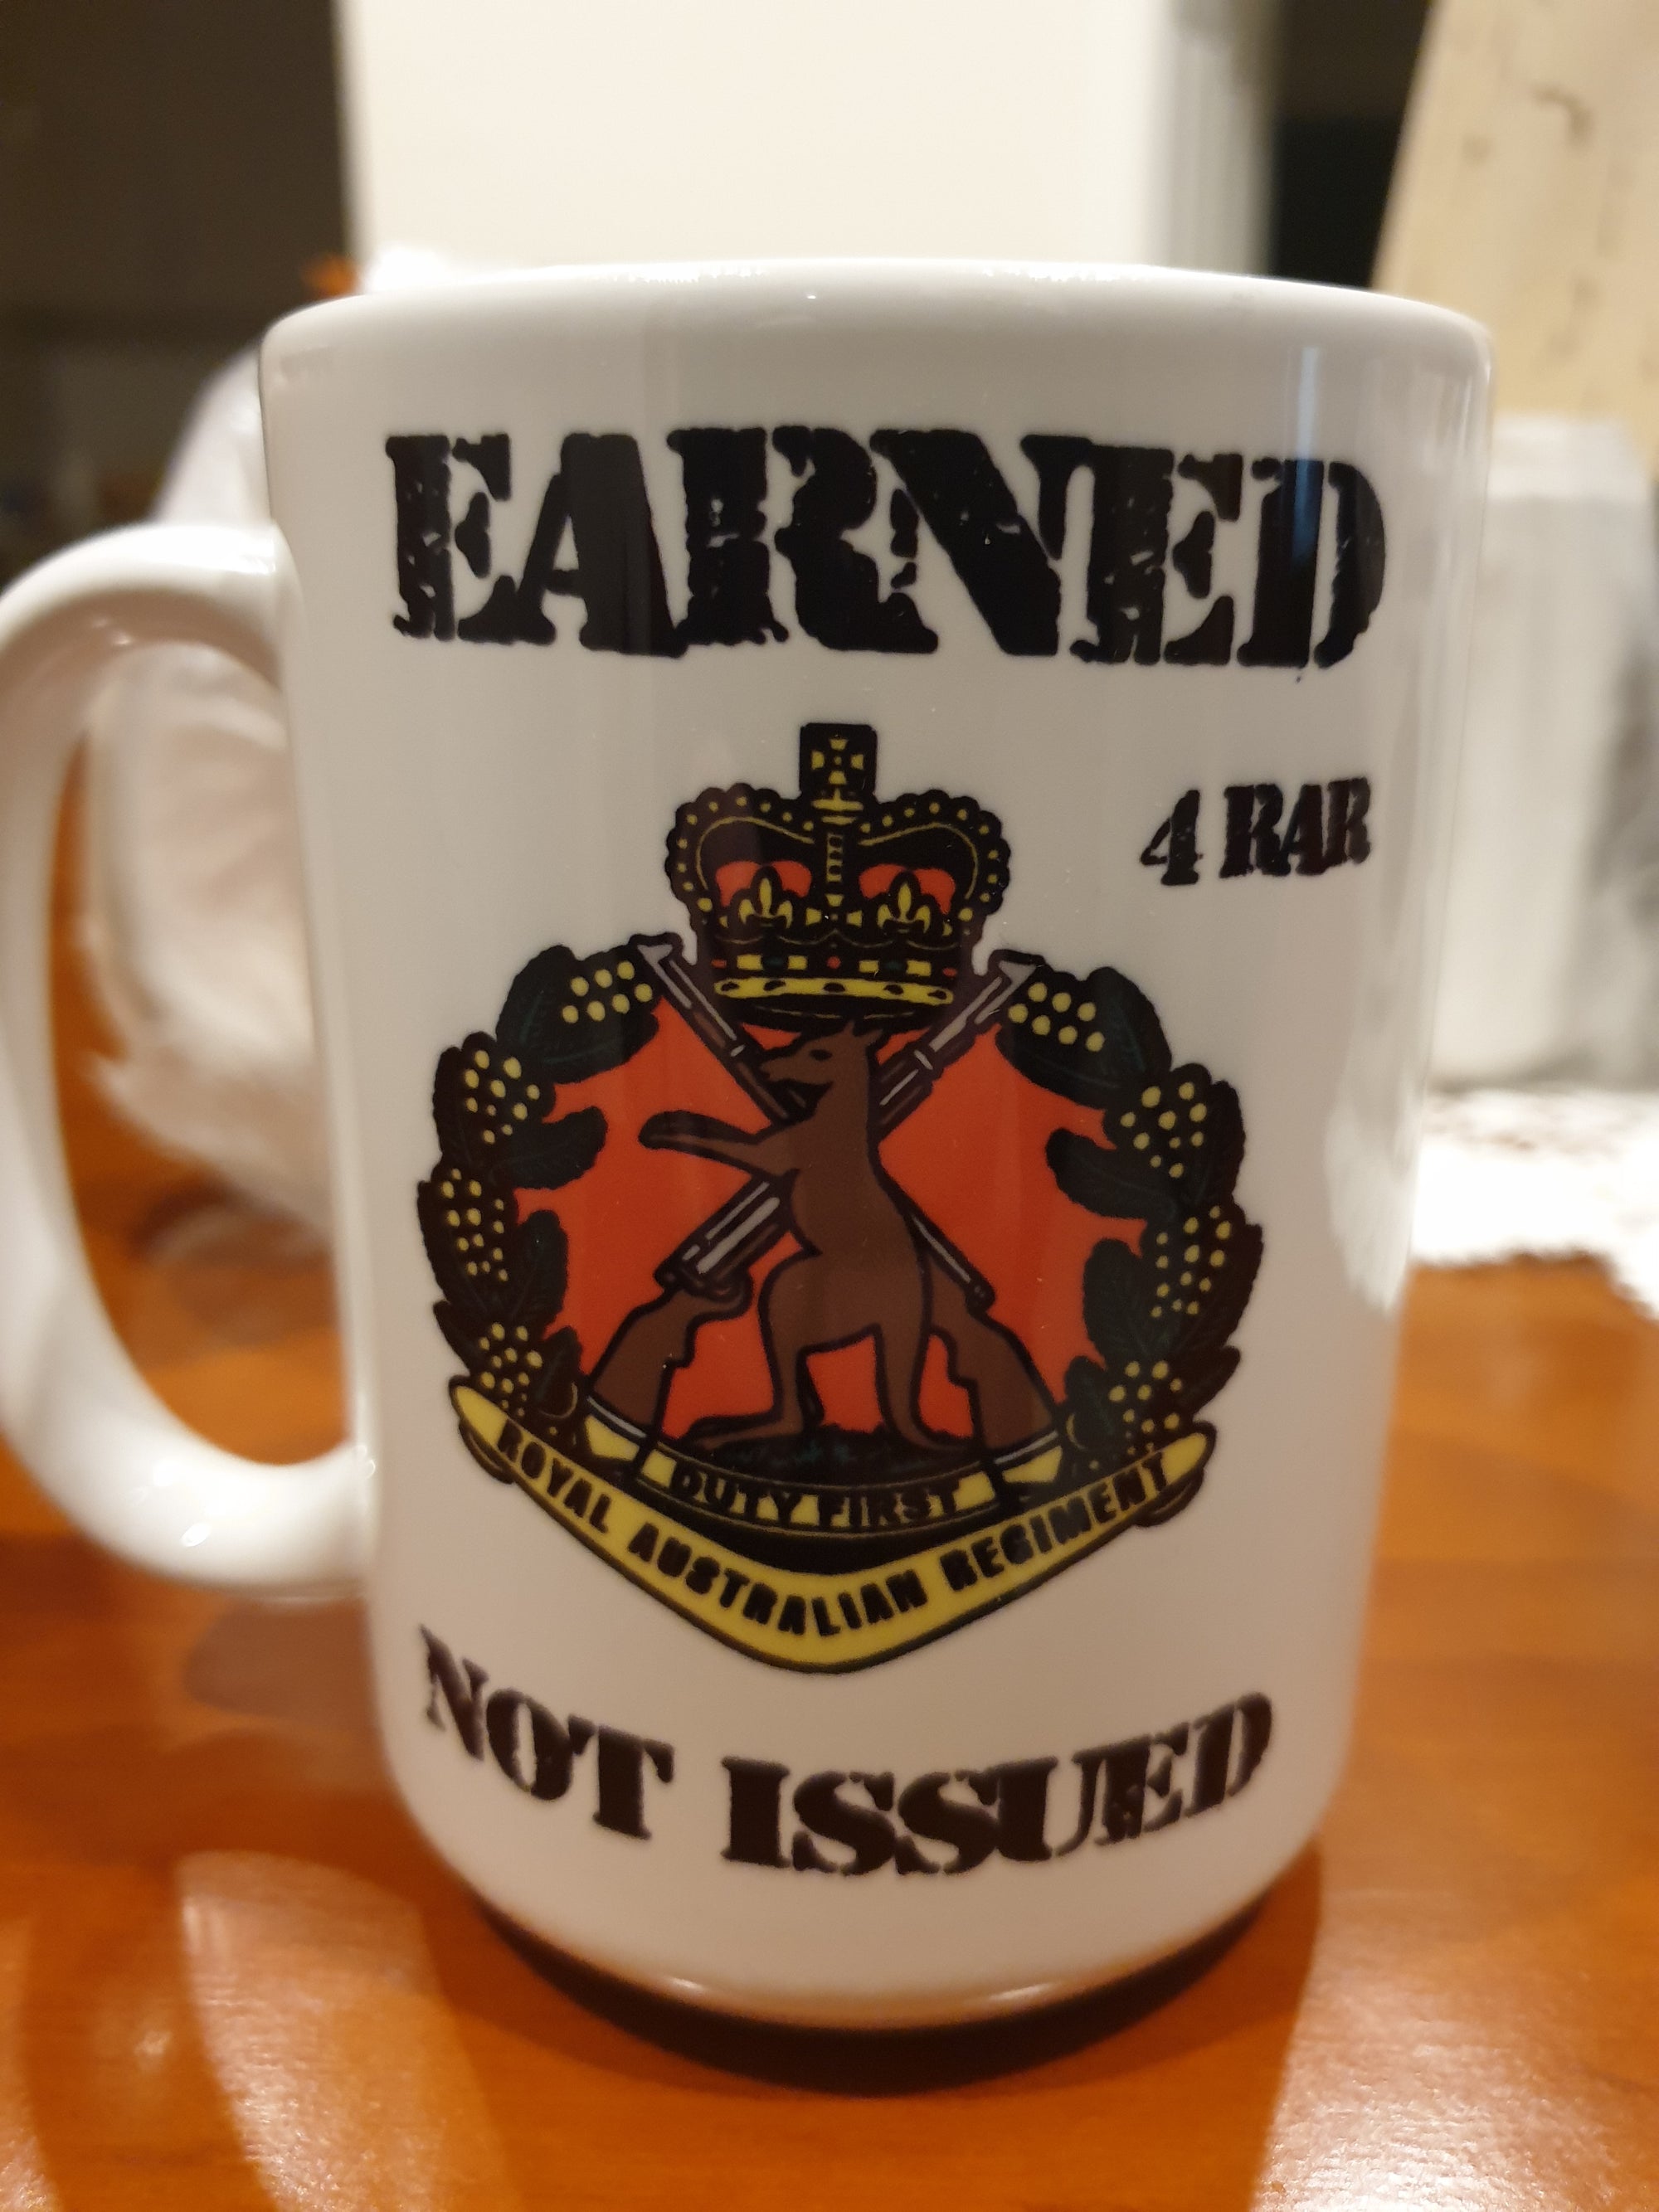 4 15 OZ  4 RAR Earned not issued  mug